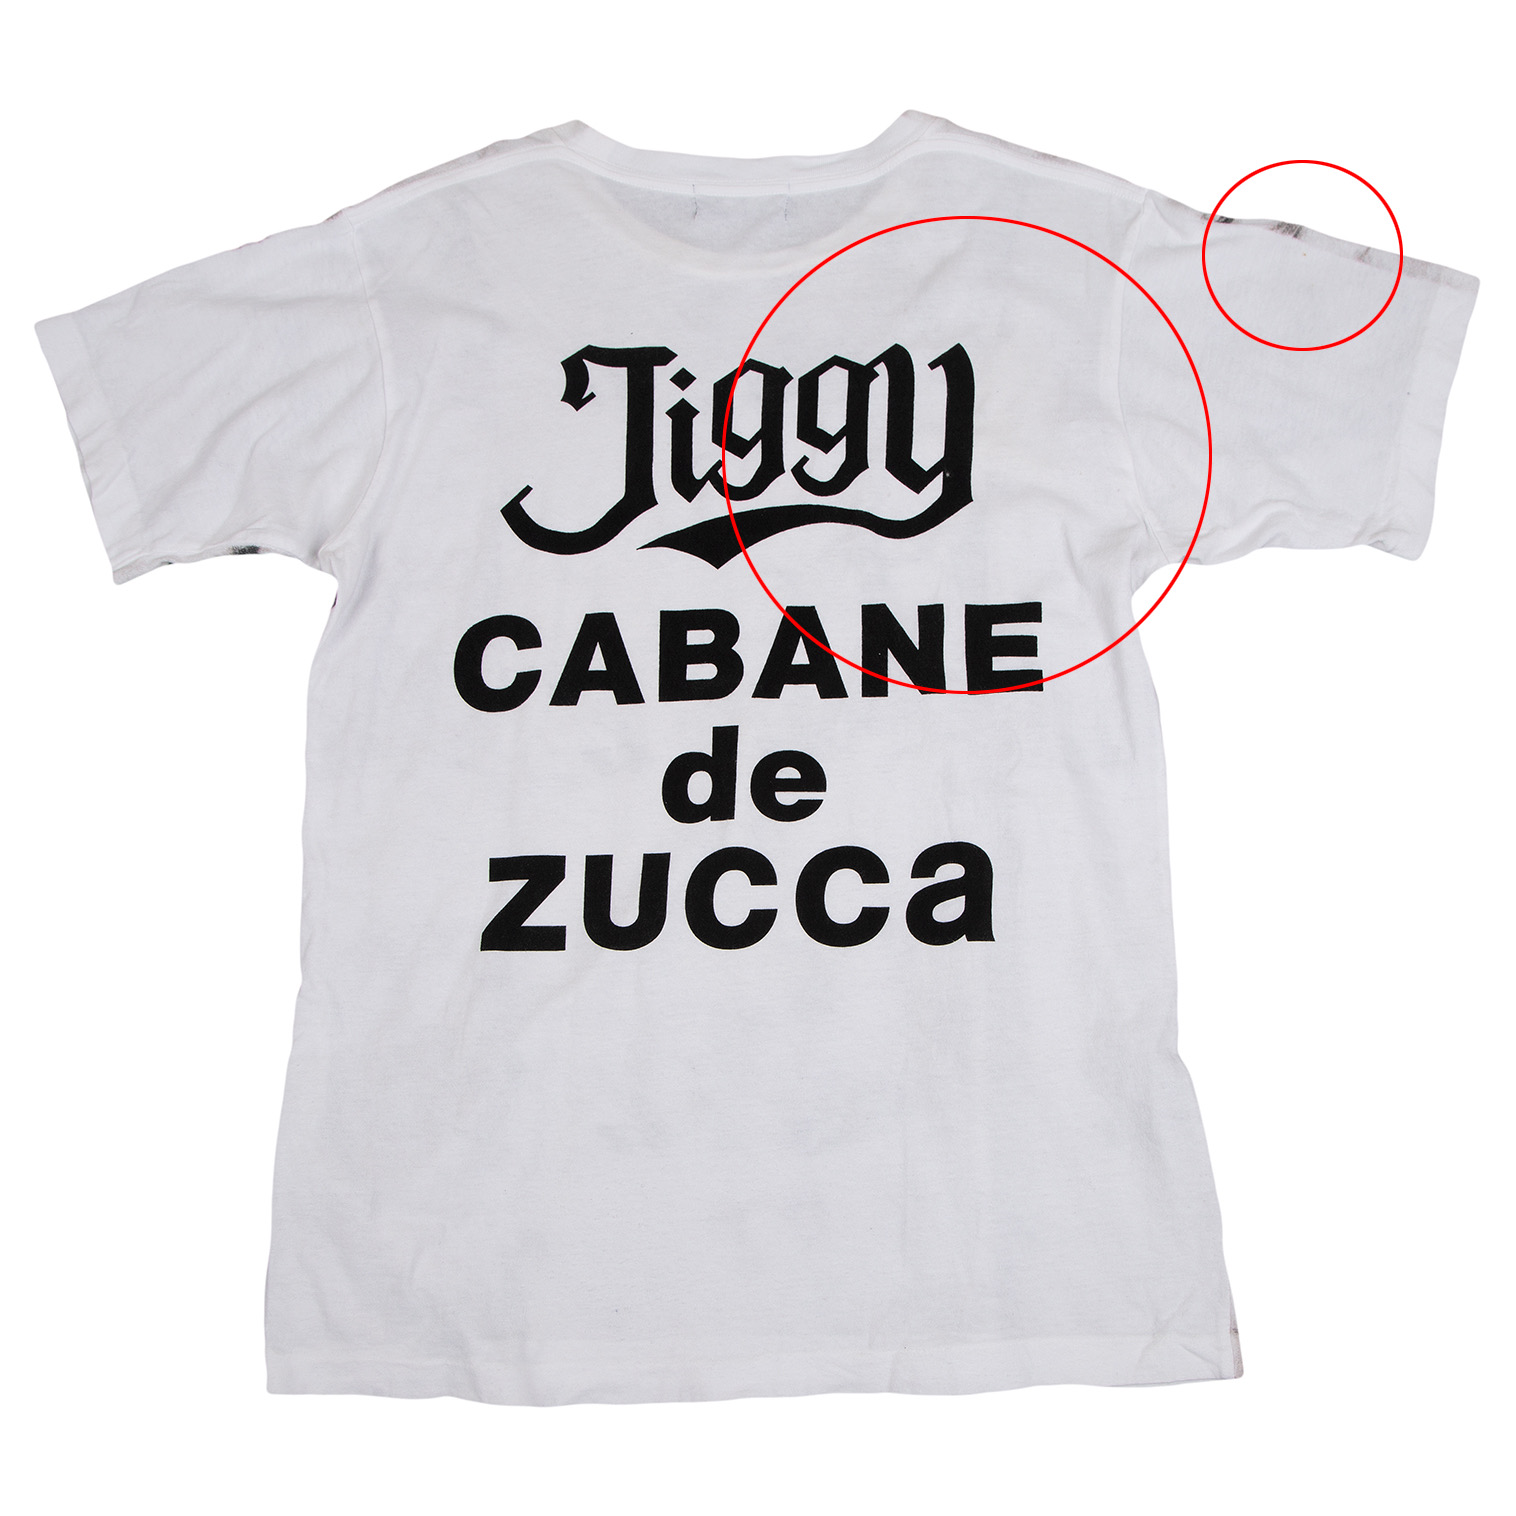 カバンドズッカCABANE de ZUCCA フローラルラメプリントTシャツ 白